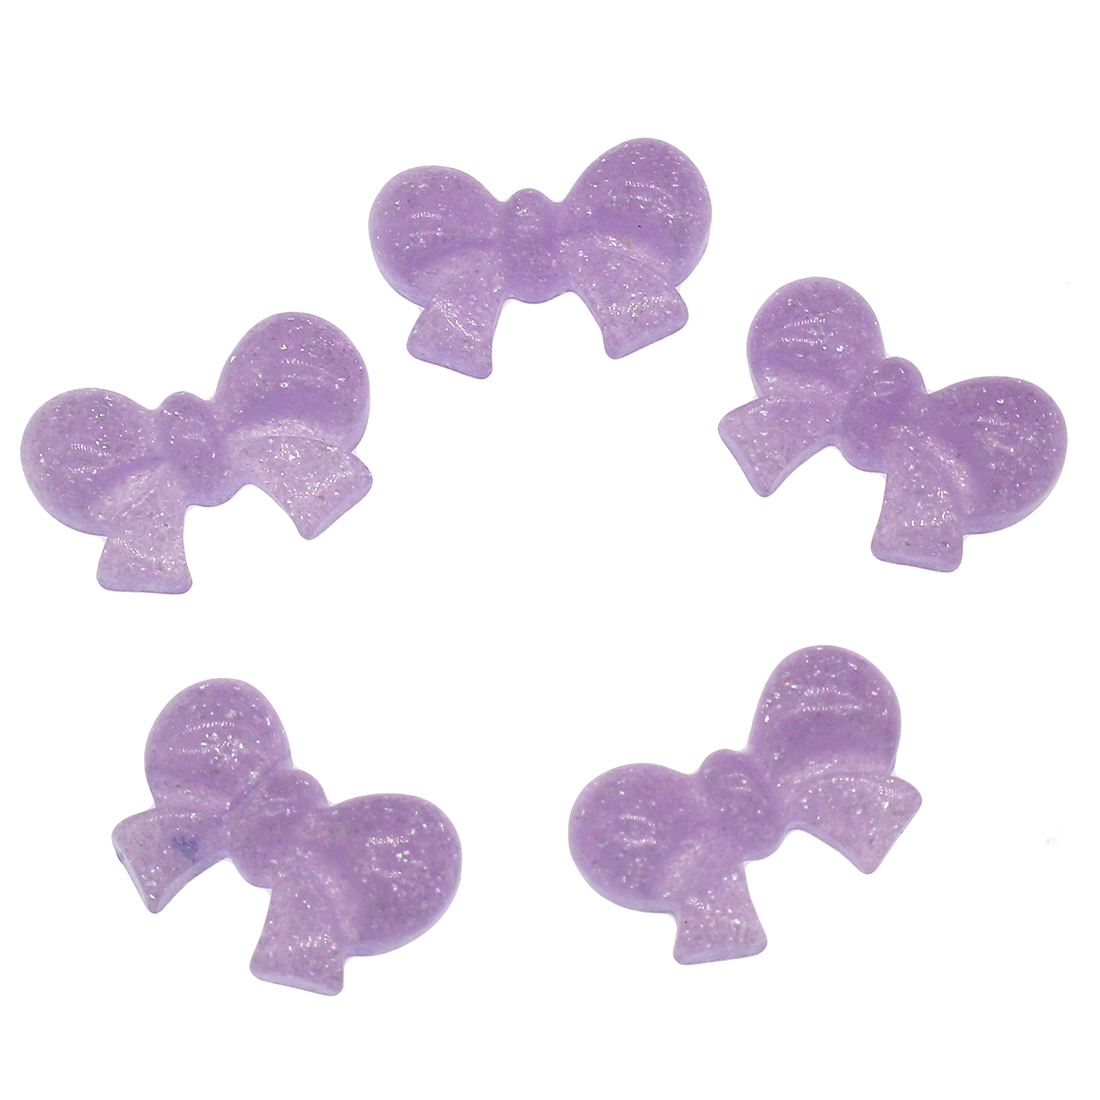 3:violetti